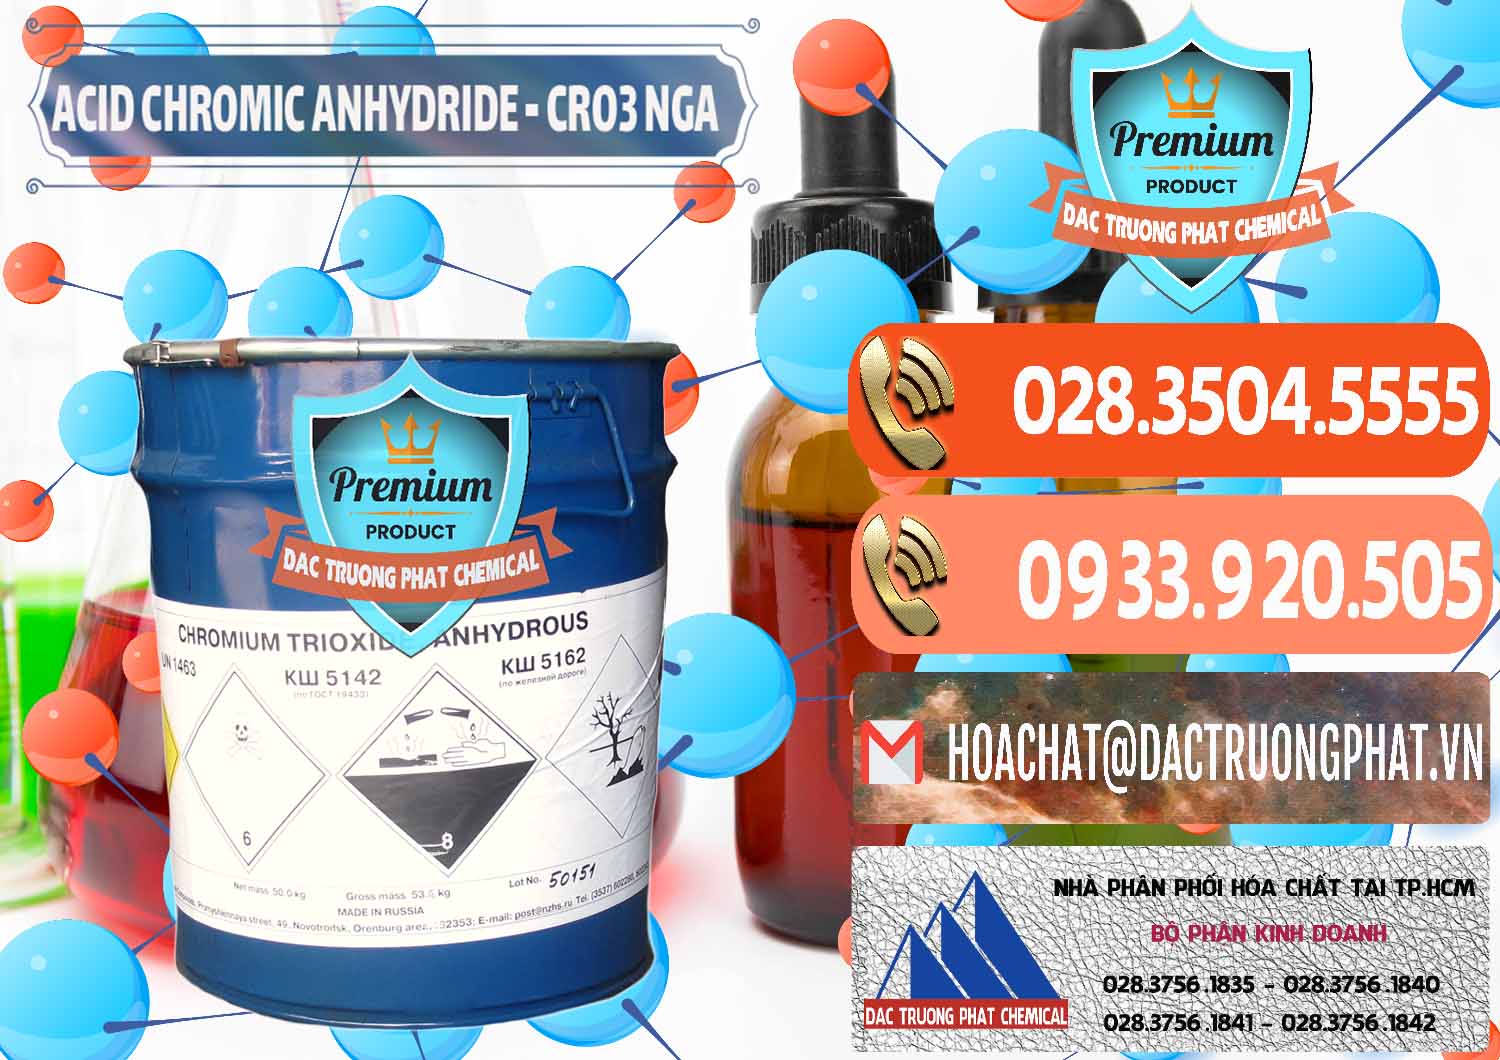 Chuyên kinh doanh _ bán Acid Chromic Anhydride - Cromic CRO3 Nga Russia - 0006 - Đơn vị chuyên kinh doanh ( phân phối ) hóa chất tại TP.HCM - hoachatmientay.com